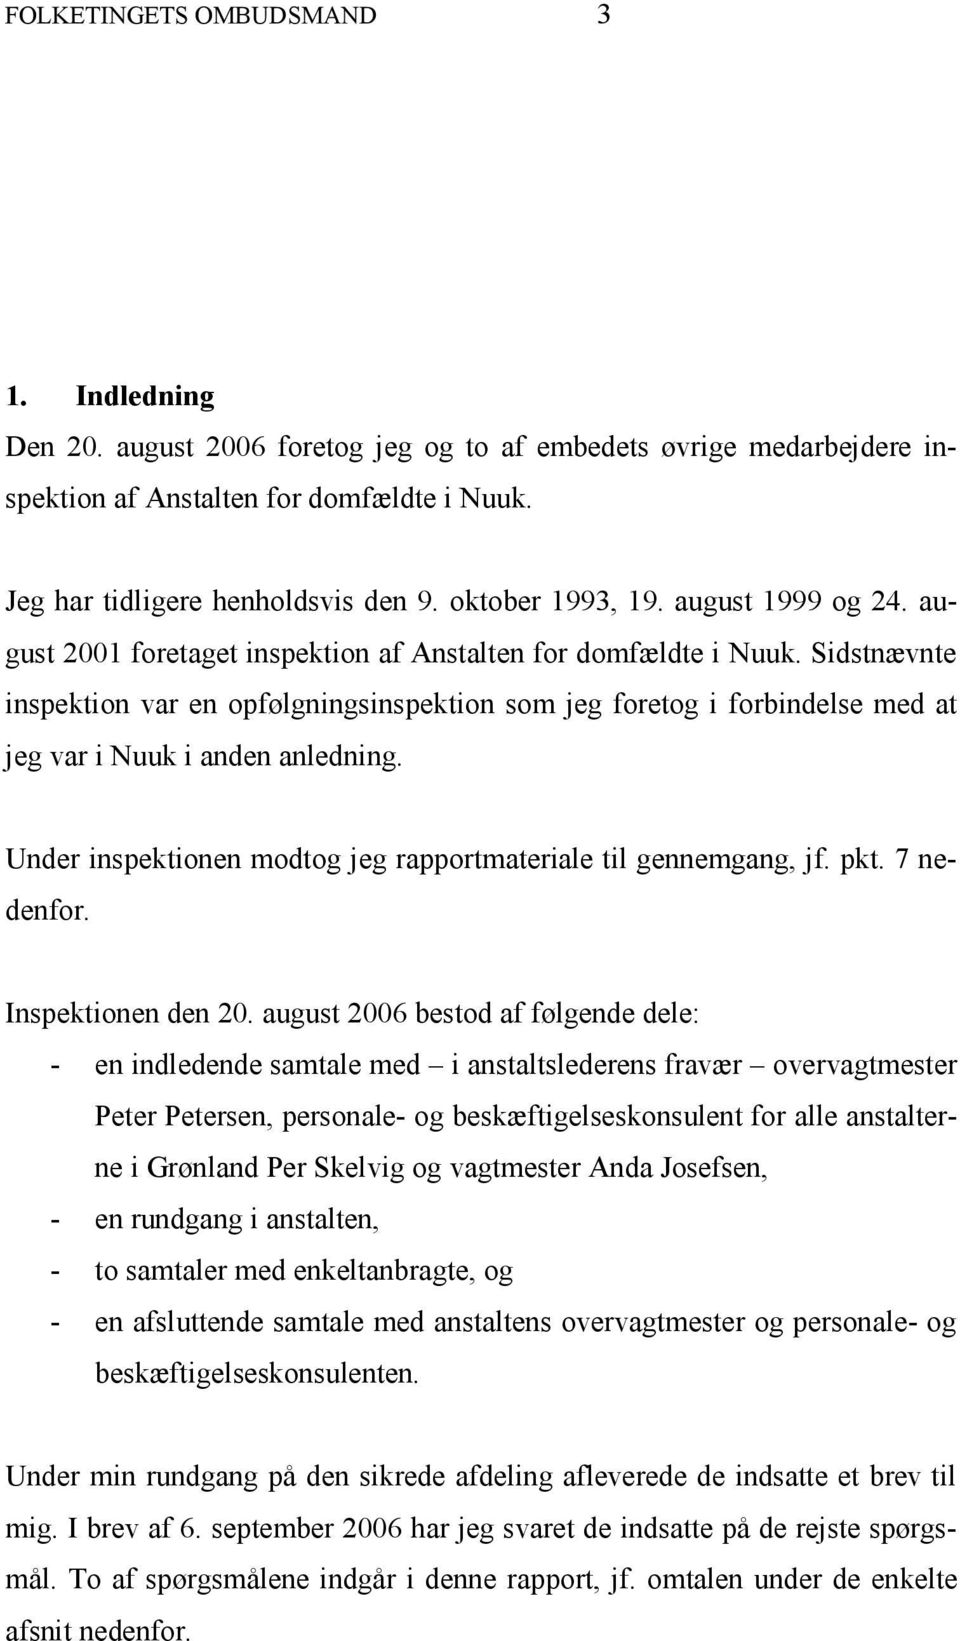 Sidstnævnte inspektion var en opfølgningsinspektion som jeg foretog i forbindelse med at jeg var i Nuuk i anden anledning. Under inspektionen modtog jeg rapportmateriale til gennemgang, jf. pkt.